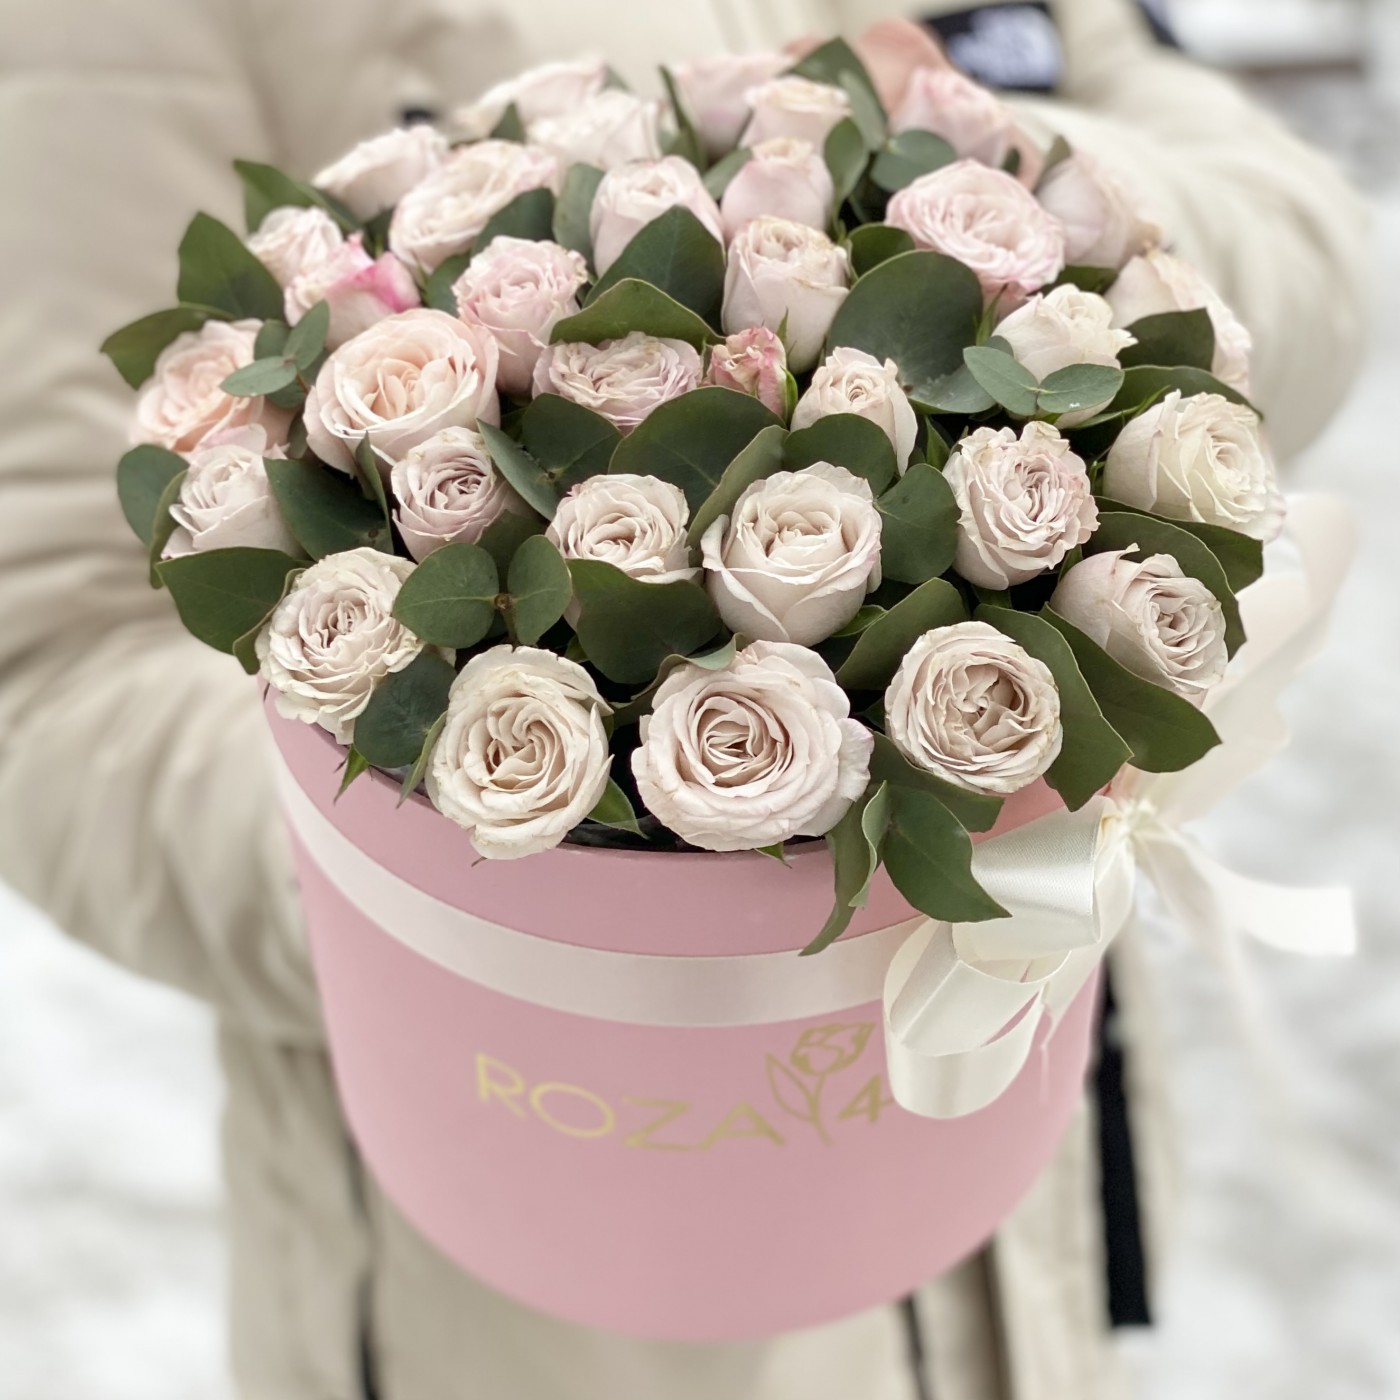 Розовые розы Энджел бомбастик с эвкалиптом в коробке